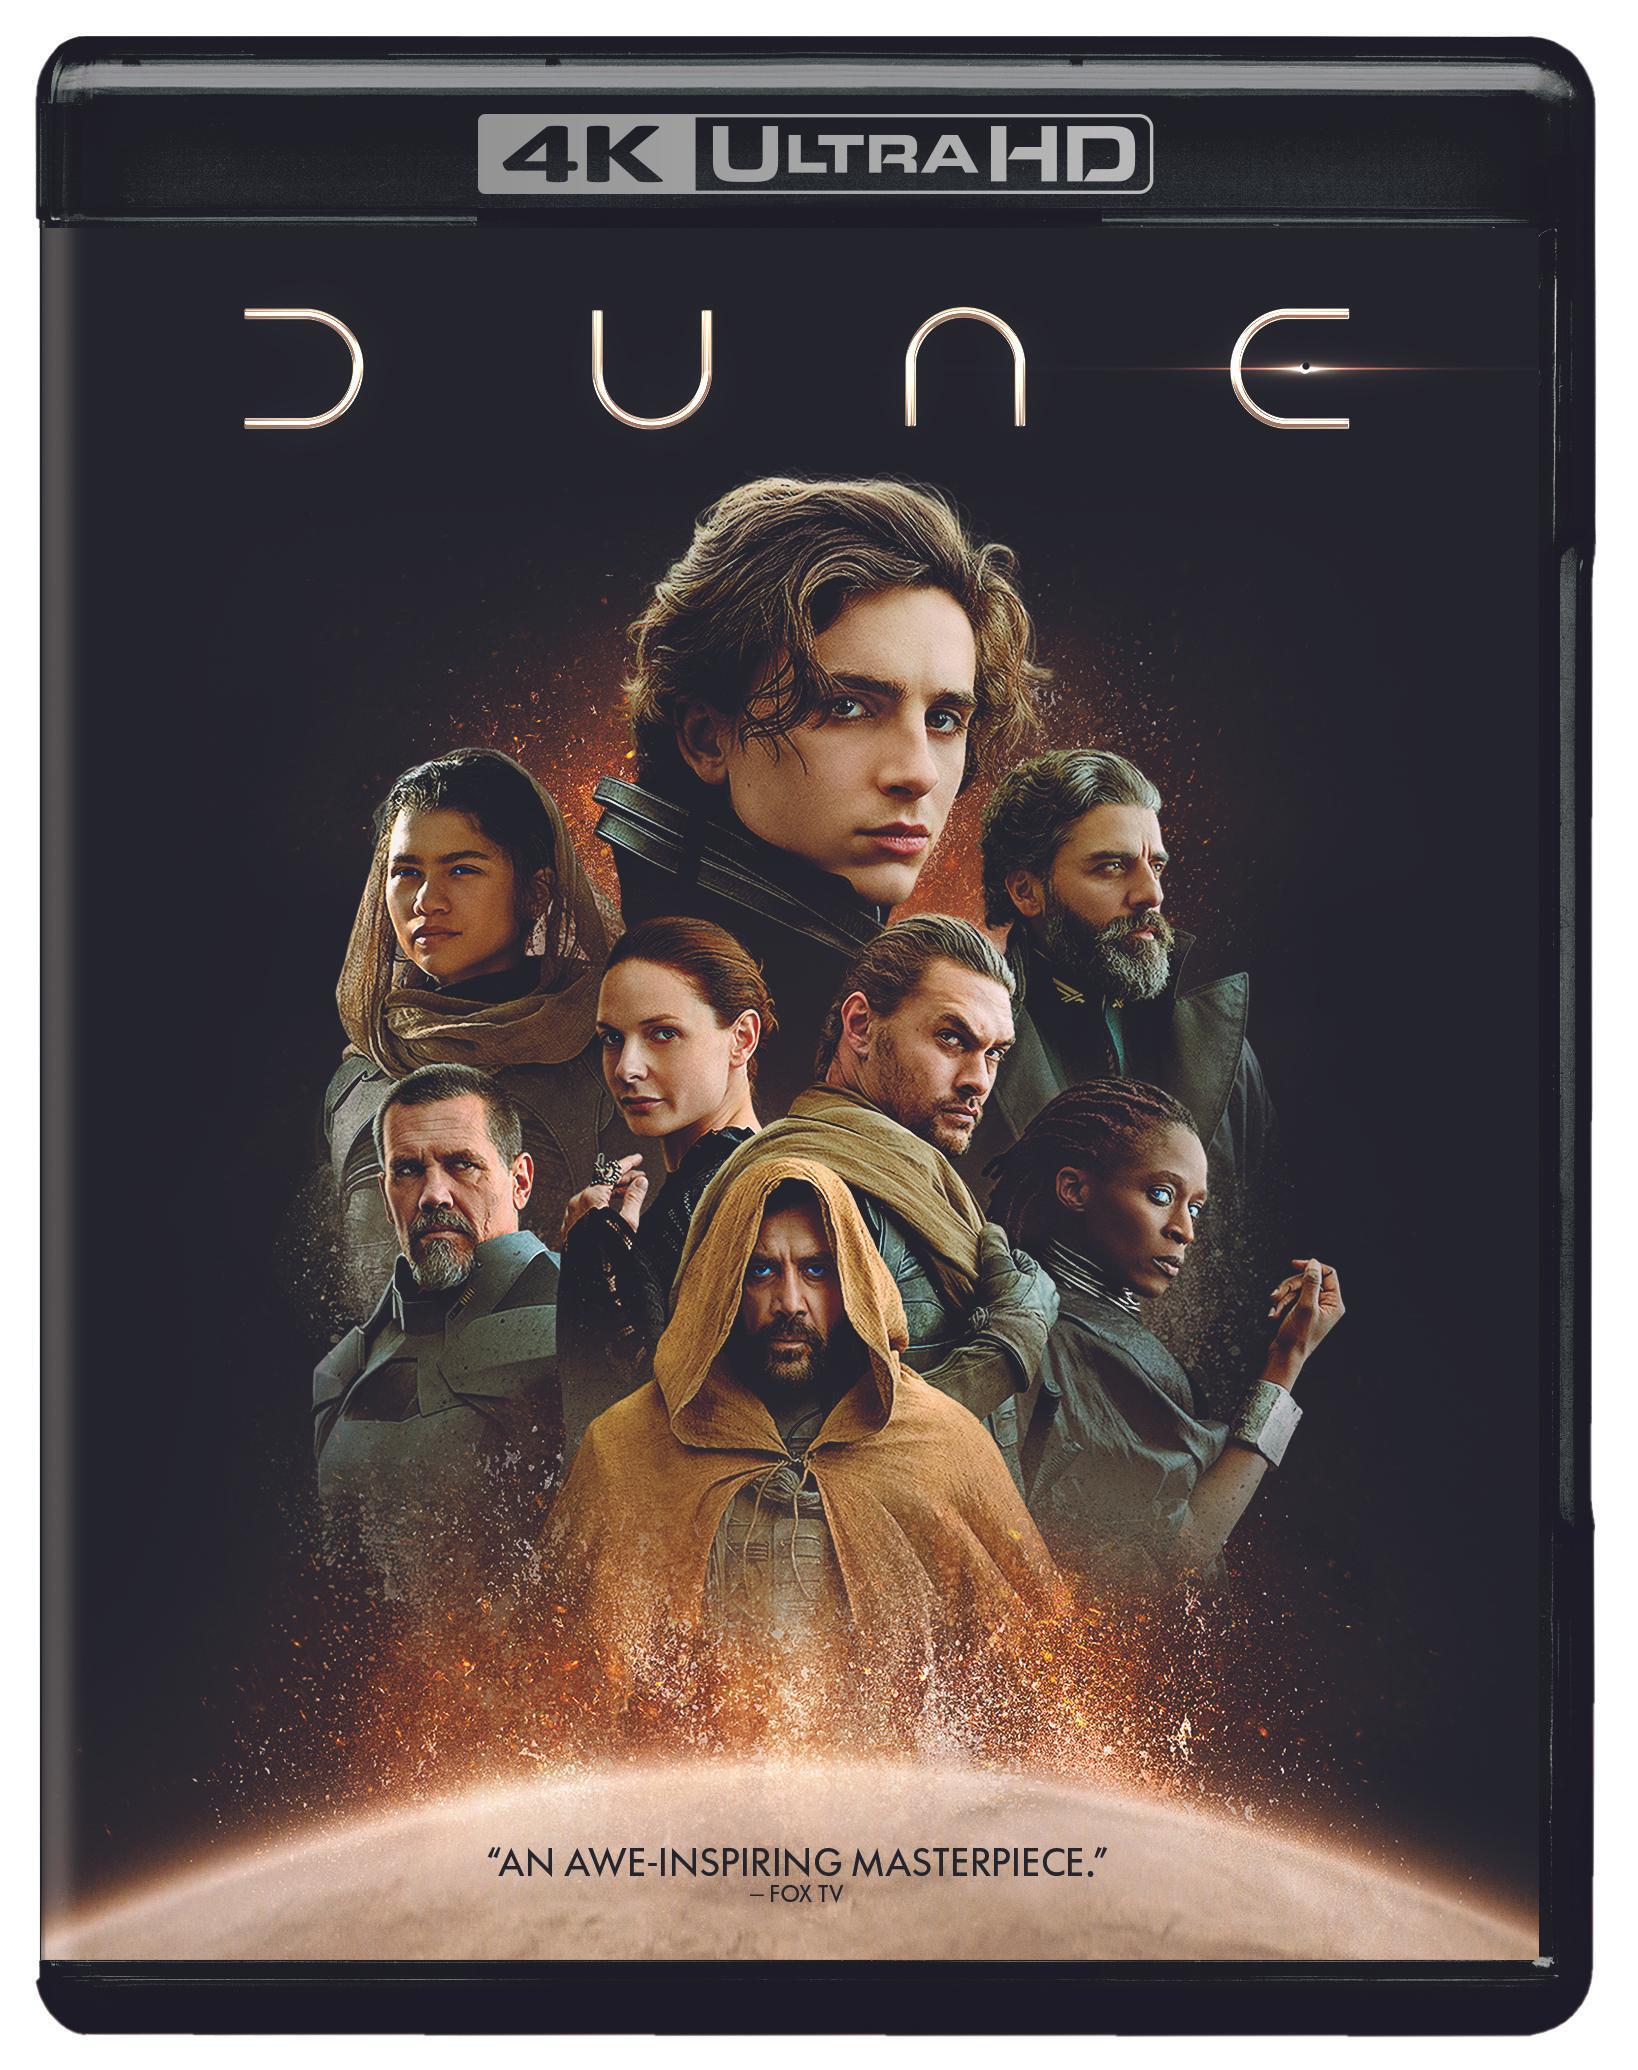 Dune (4K Ultra HD + Blu-ray) - UHD [ 2021 ]  - Sci Fi Movies On 4K Ultra HD Blu-ray - Movies On GRUV